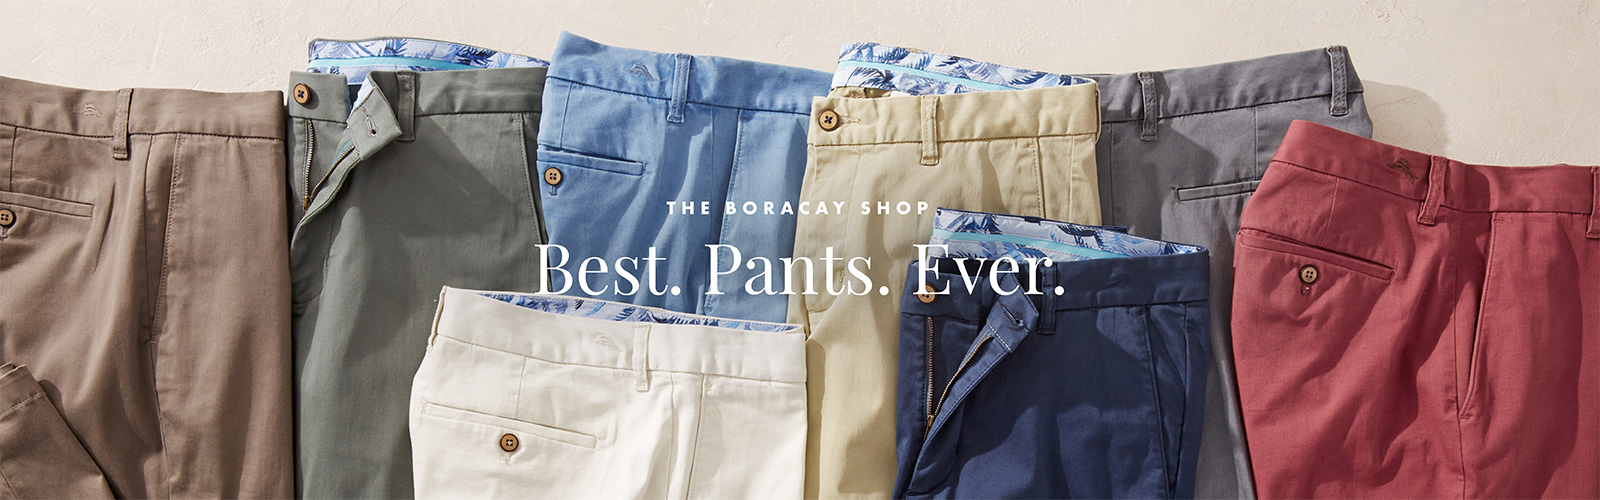 The Boracay Shop - Best. Pants. Ever.